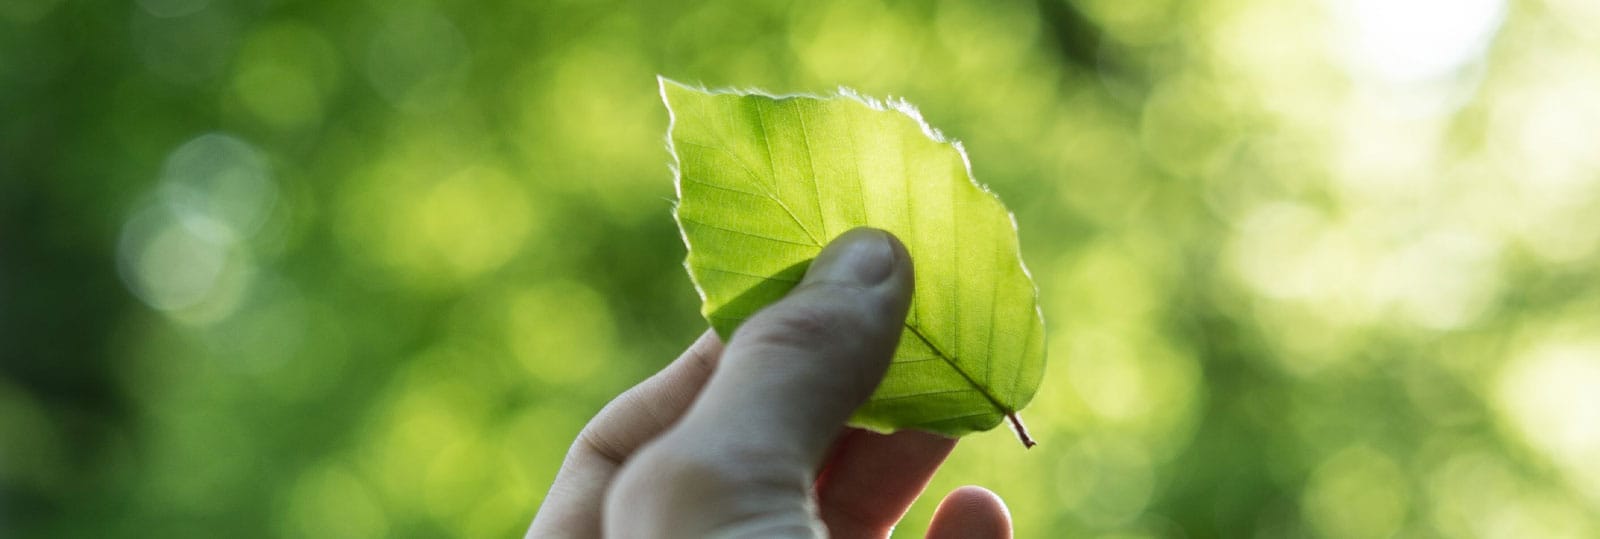 Eine Hand hält ein grünes Blatt vor unscharfem Blätterhintergrund